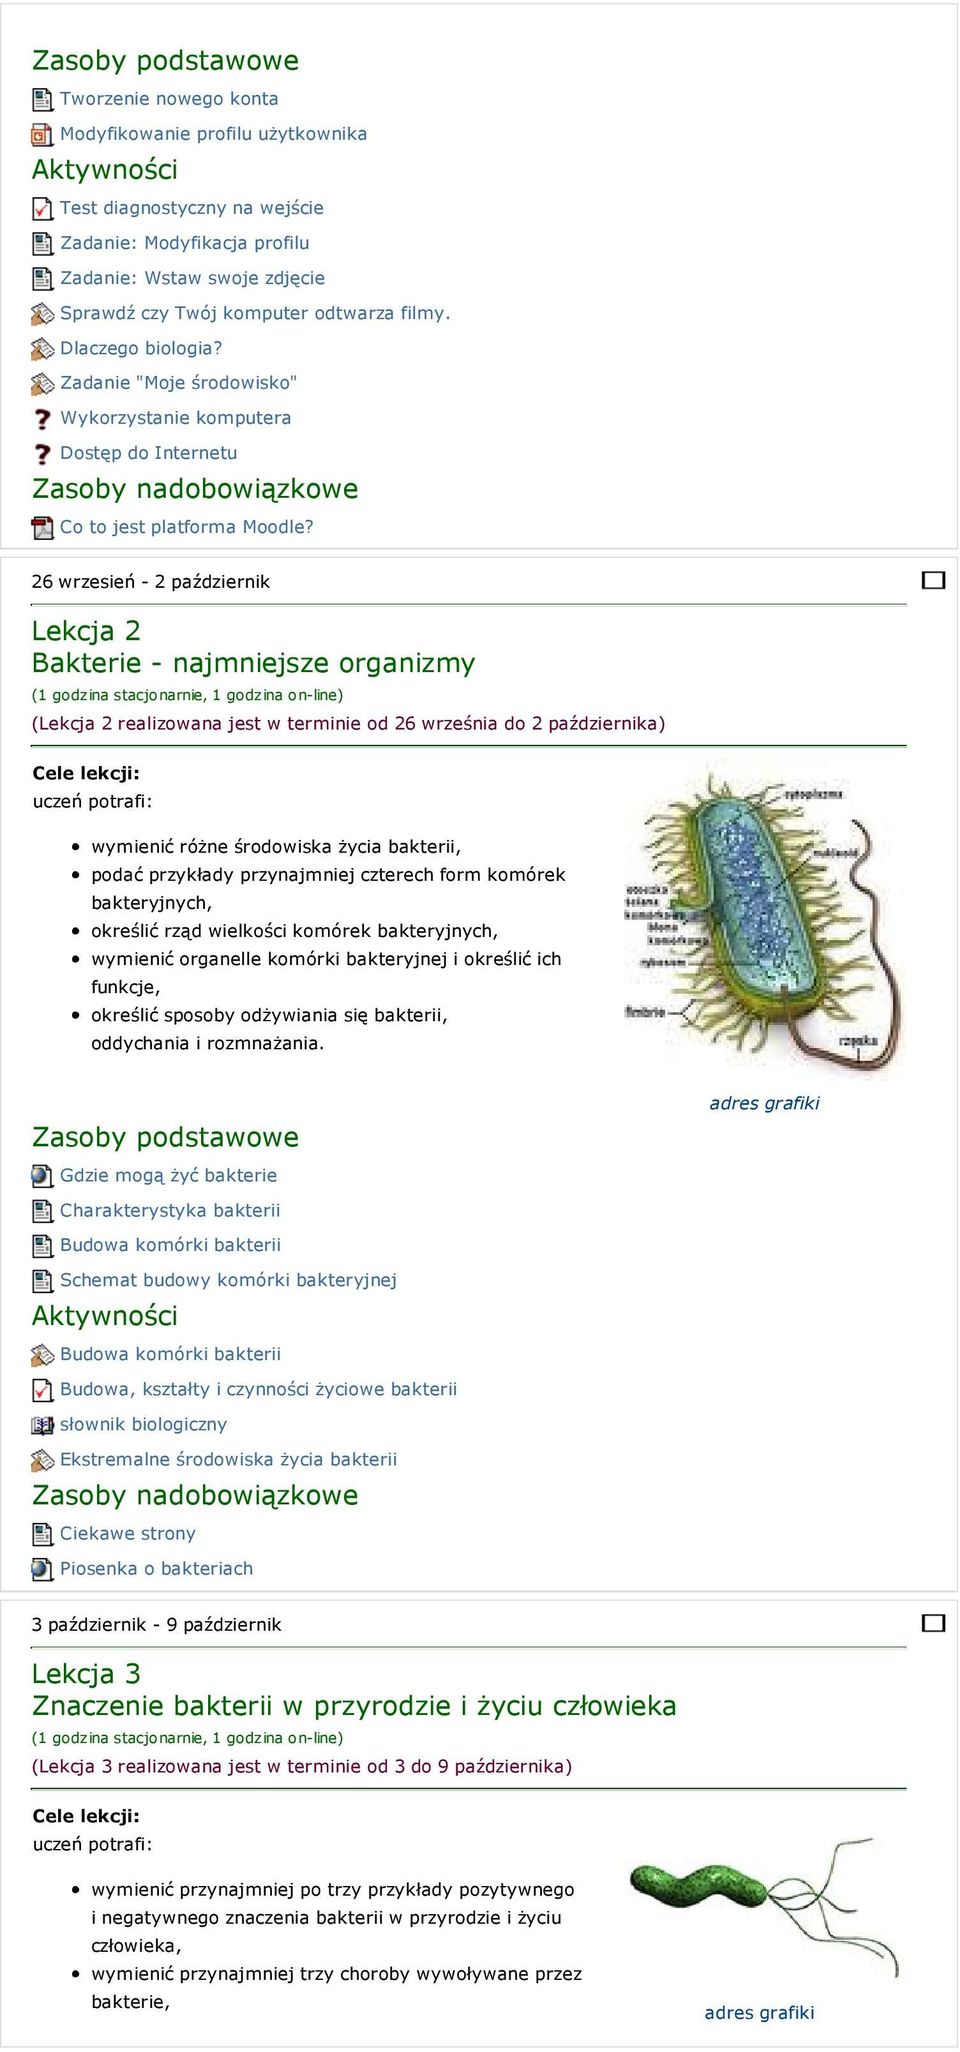 26 wrzesień - 2 październik Lekcja 2 Bakterie - najmniejsze organizmy (1 godzina stacjonarnie, 1 godzina on-line) (Lekcja 2 realizowana jest w terminie od 26 września do 2 października) wymienić